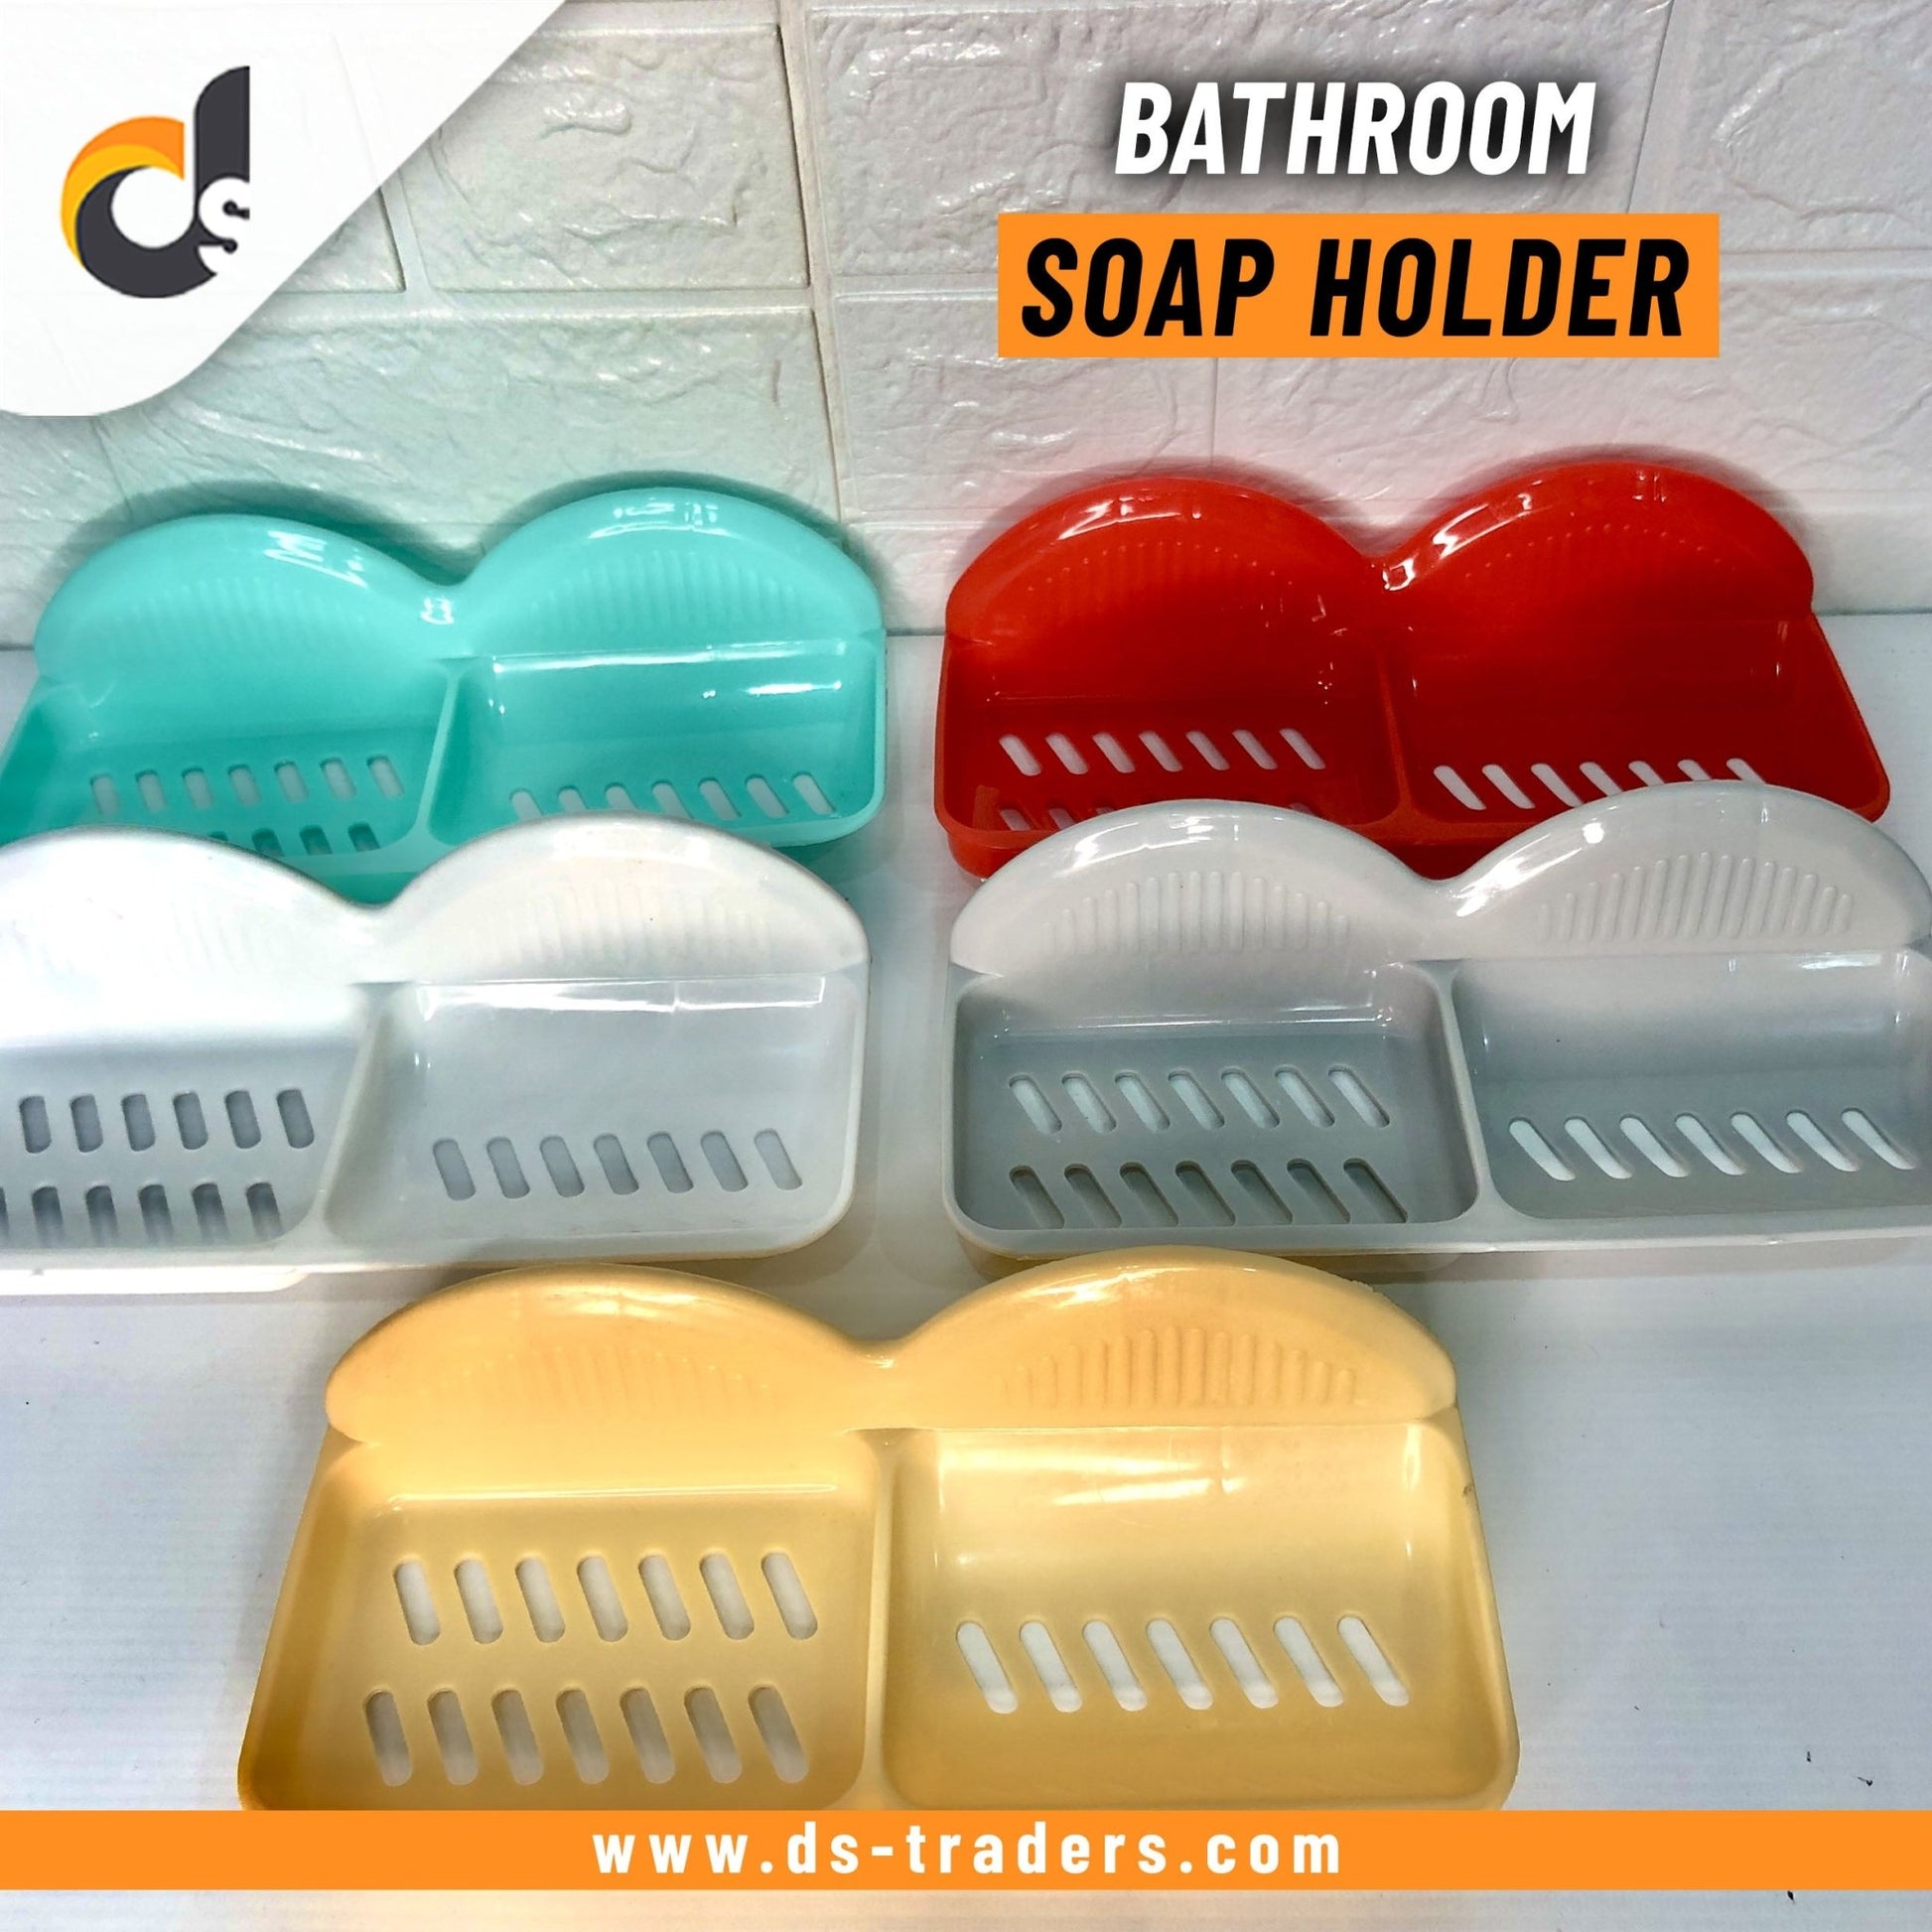 2 Portion Bathroom Soap Holder - DS Traders